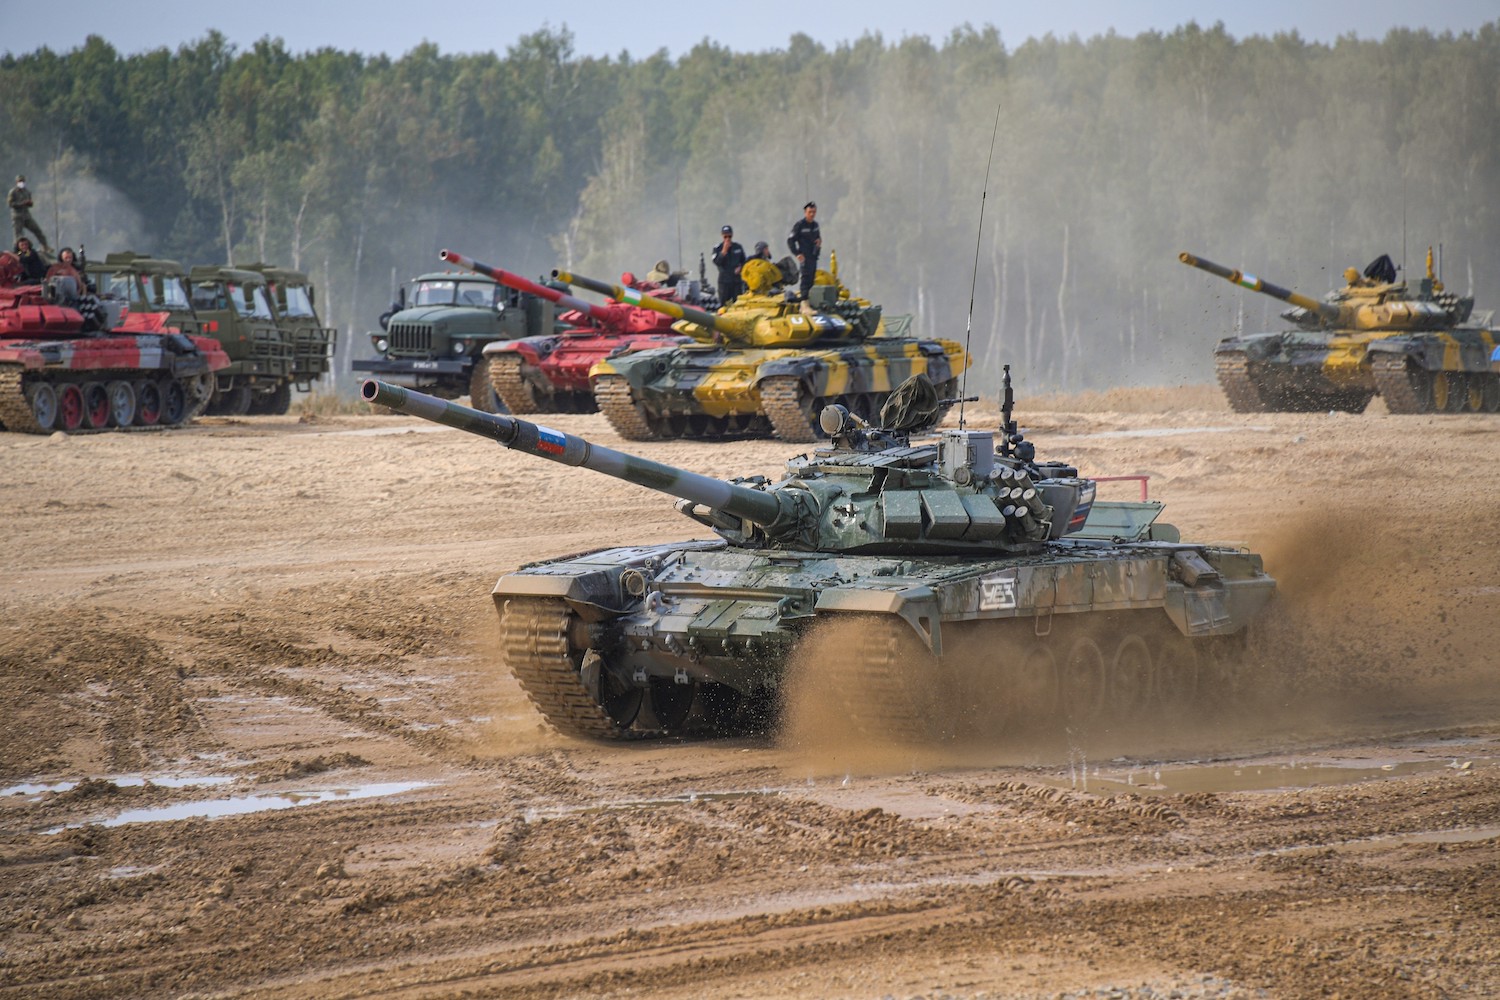 Российские танкисты в десятый раз победили в «Танковом биатлоне»